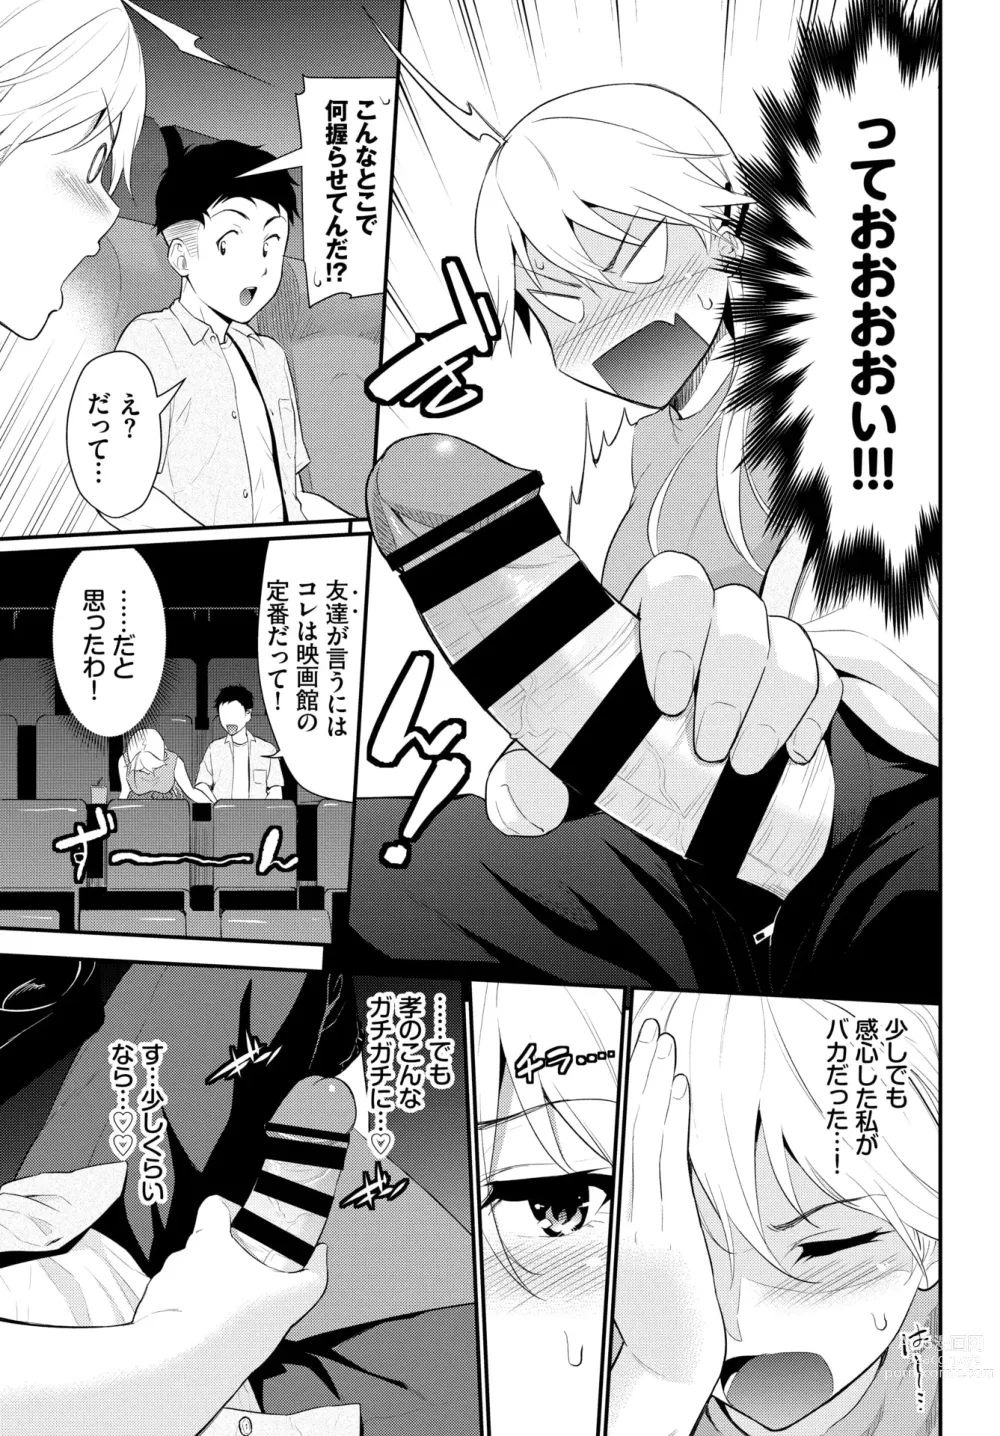 Page 5 of manga Hodad Girl